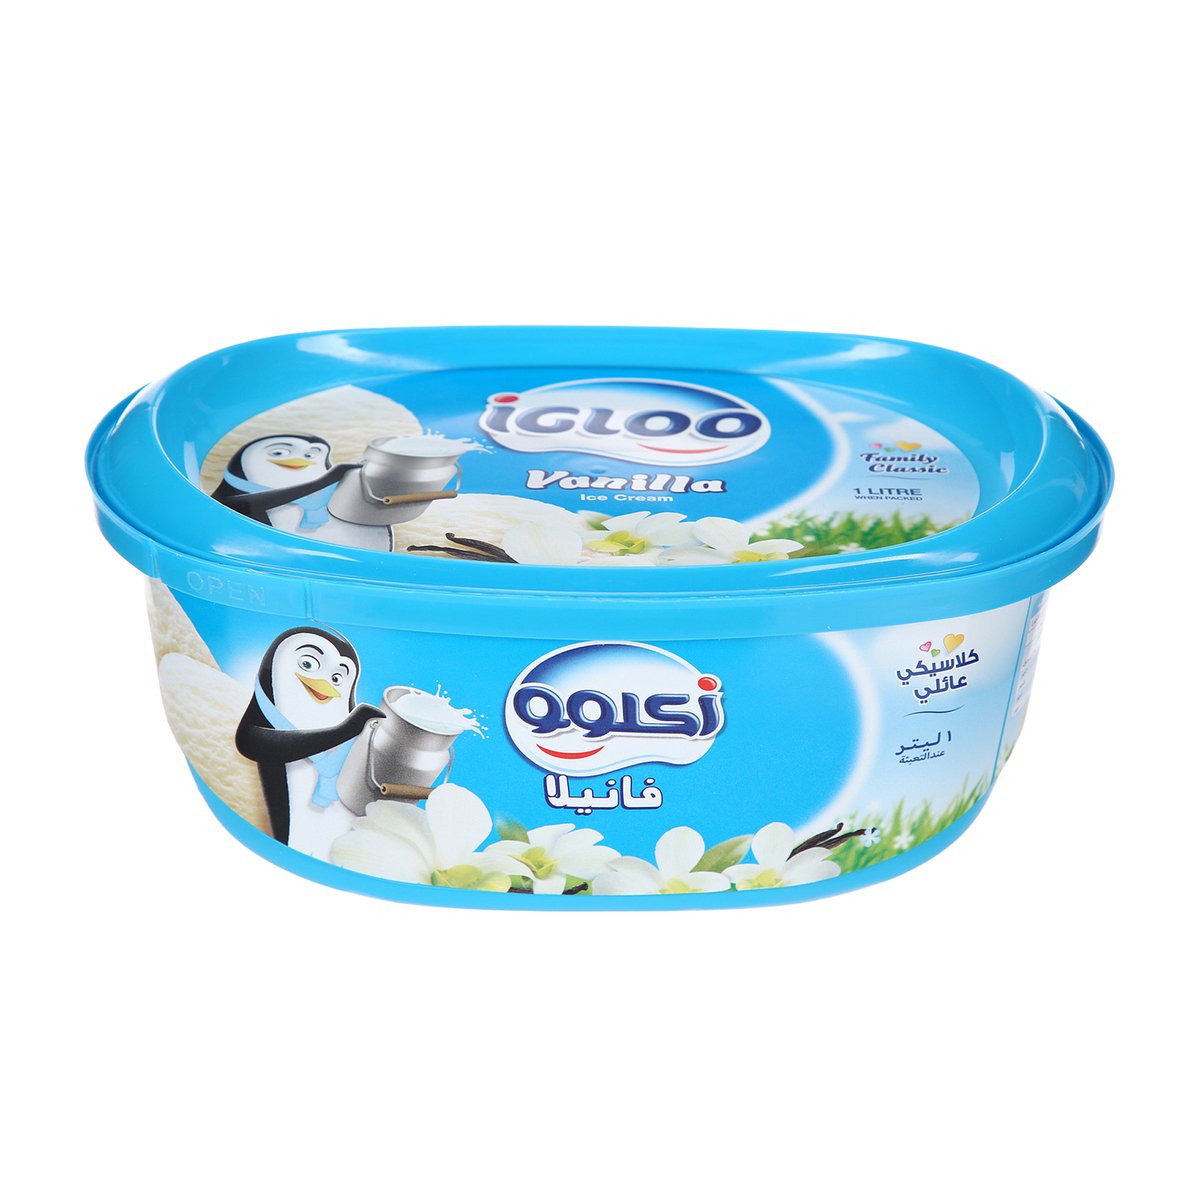 اشتري قم بشراء إيجلو فانيليا عائلي كلاسيك 1 لتر Online at Best Price من الموقع - من لولو هايبر ماركت Ice Cream Take Home في السعودية